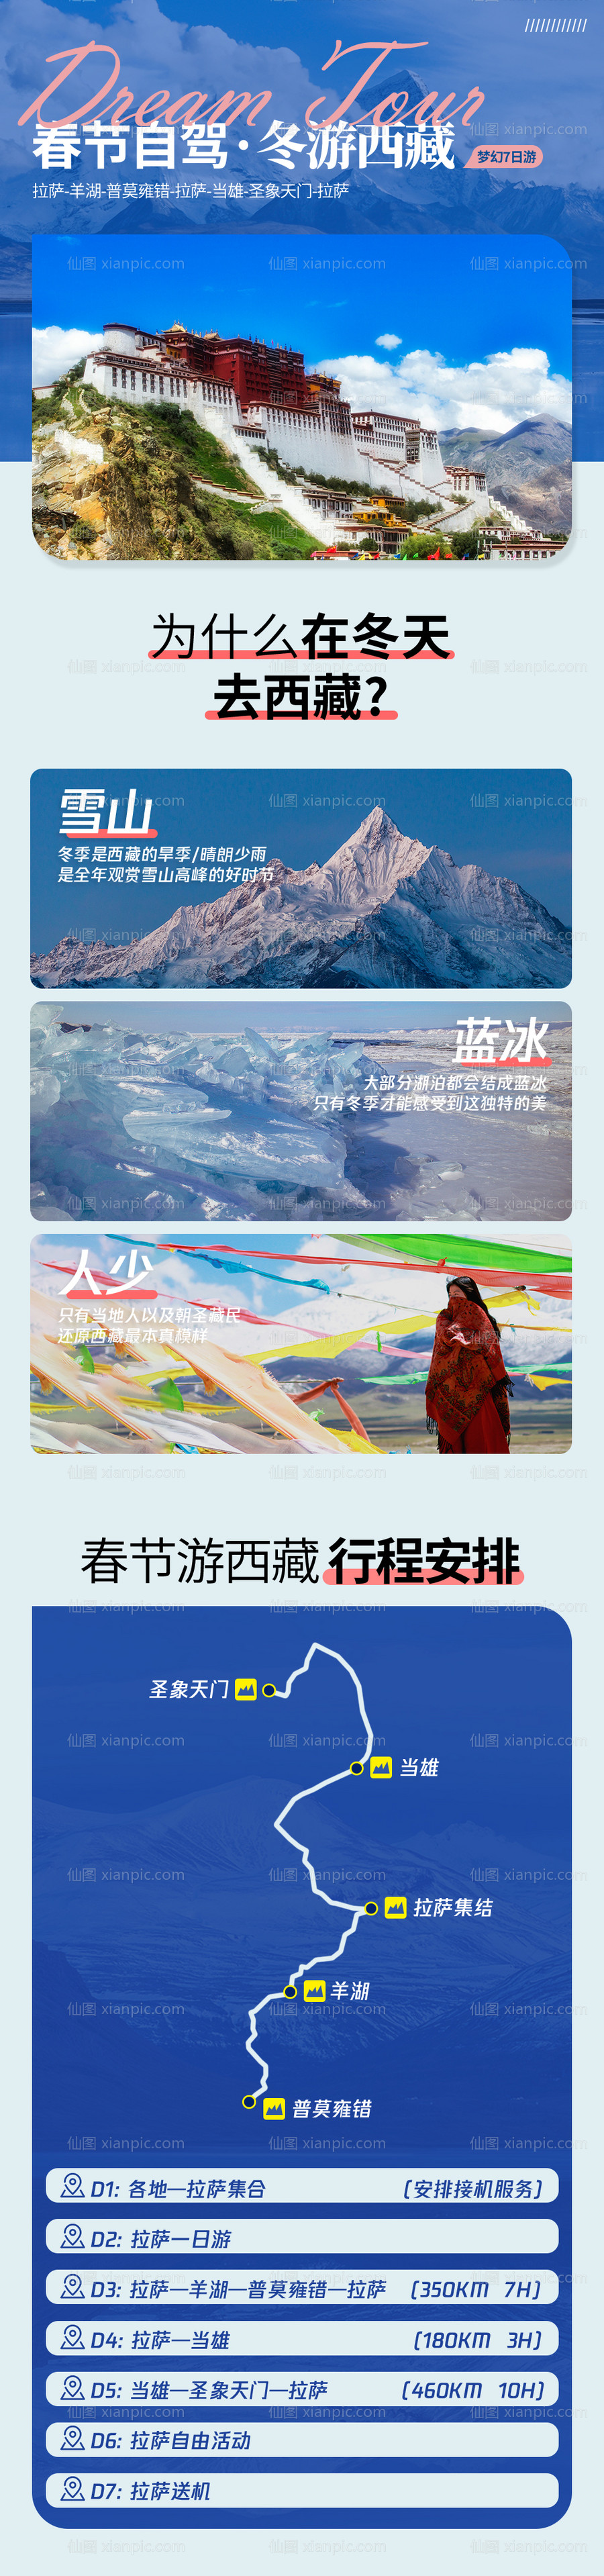 素材乐-川藏旅游线路海报